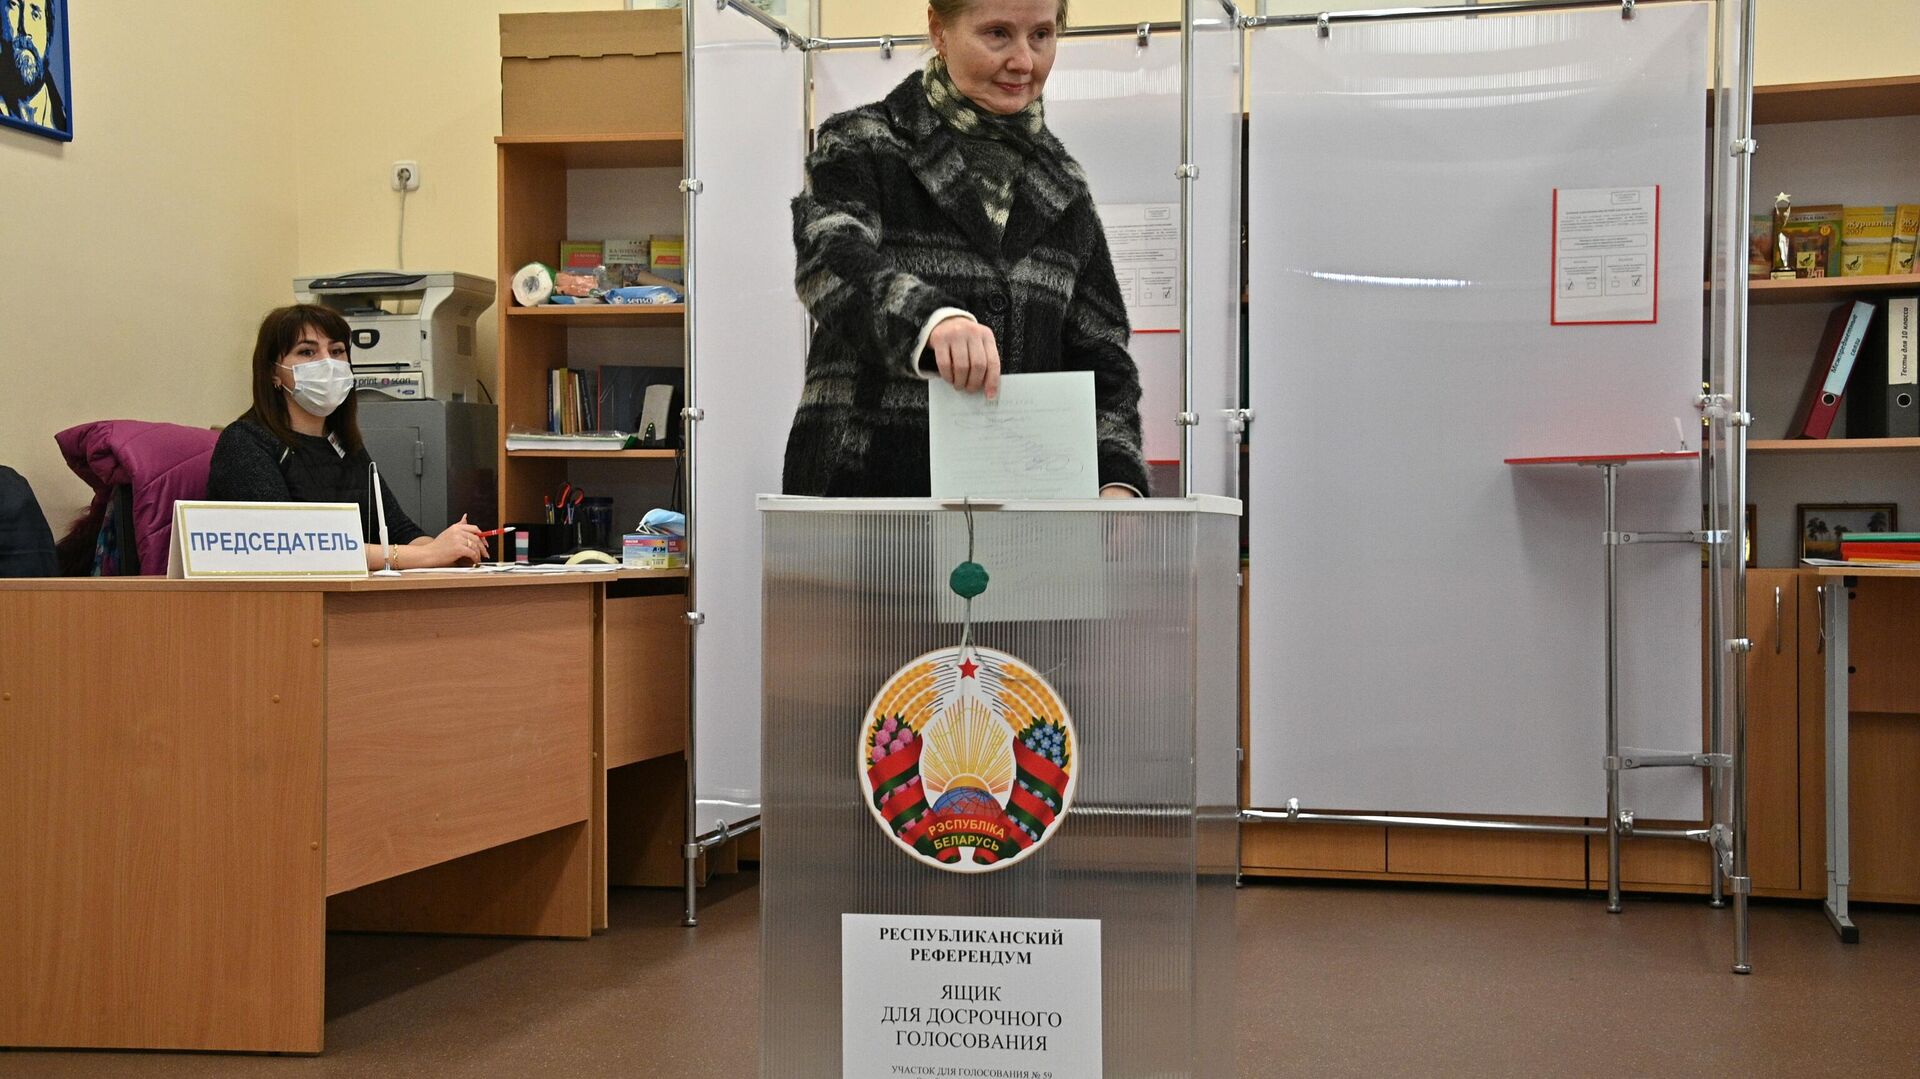 
Досрочное голосование на референдуме в Минске - Sputnik Беларусь, 1920, 23.02.2022